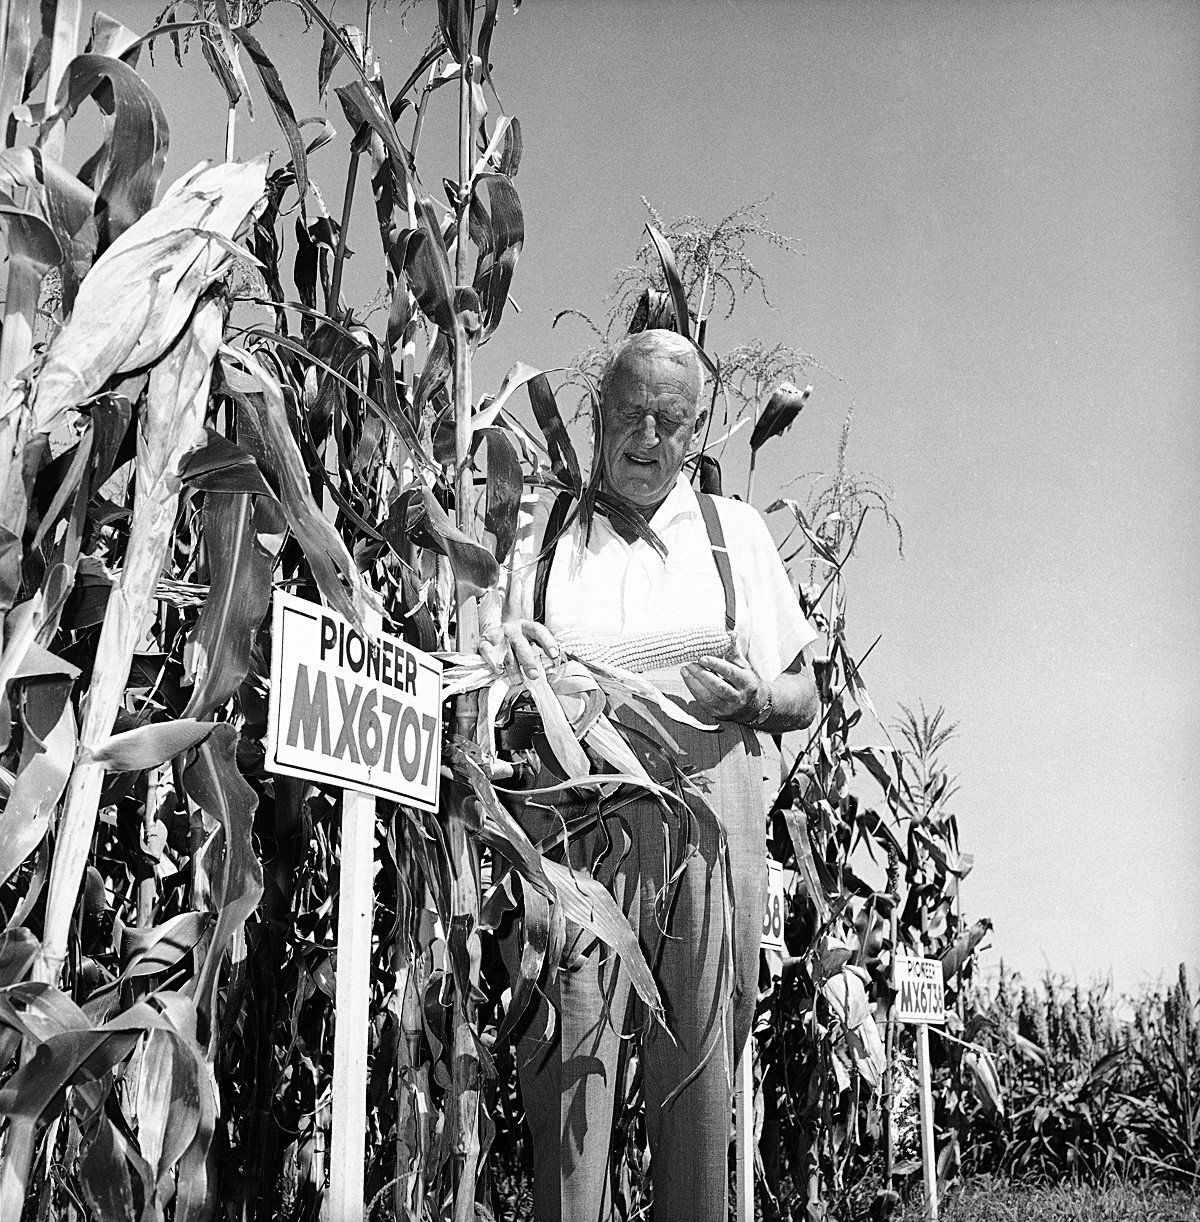 Розуел Гарст проверява царевица на експерименталния си парцел в своята ферма в Айова, 9 септември 1959 година. Гарст разработва царевица за употреба като храна за добитък, радикална техника, която предизвика революция във фермата. 